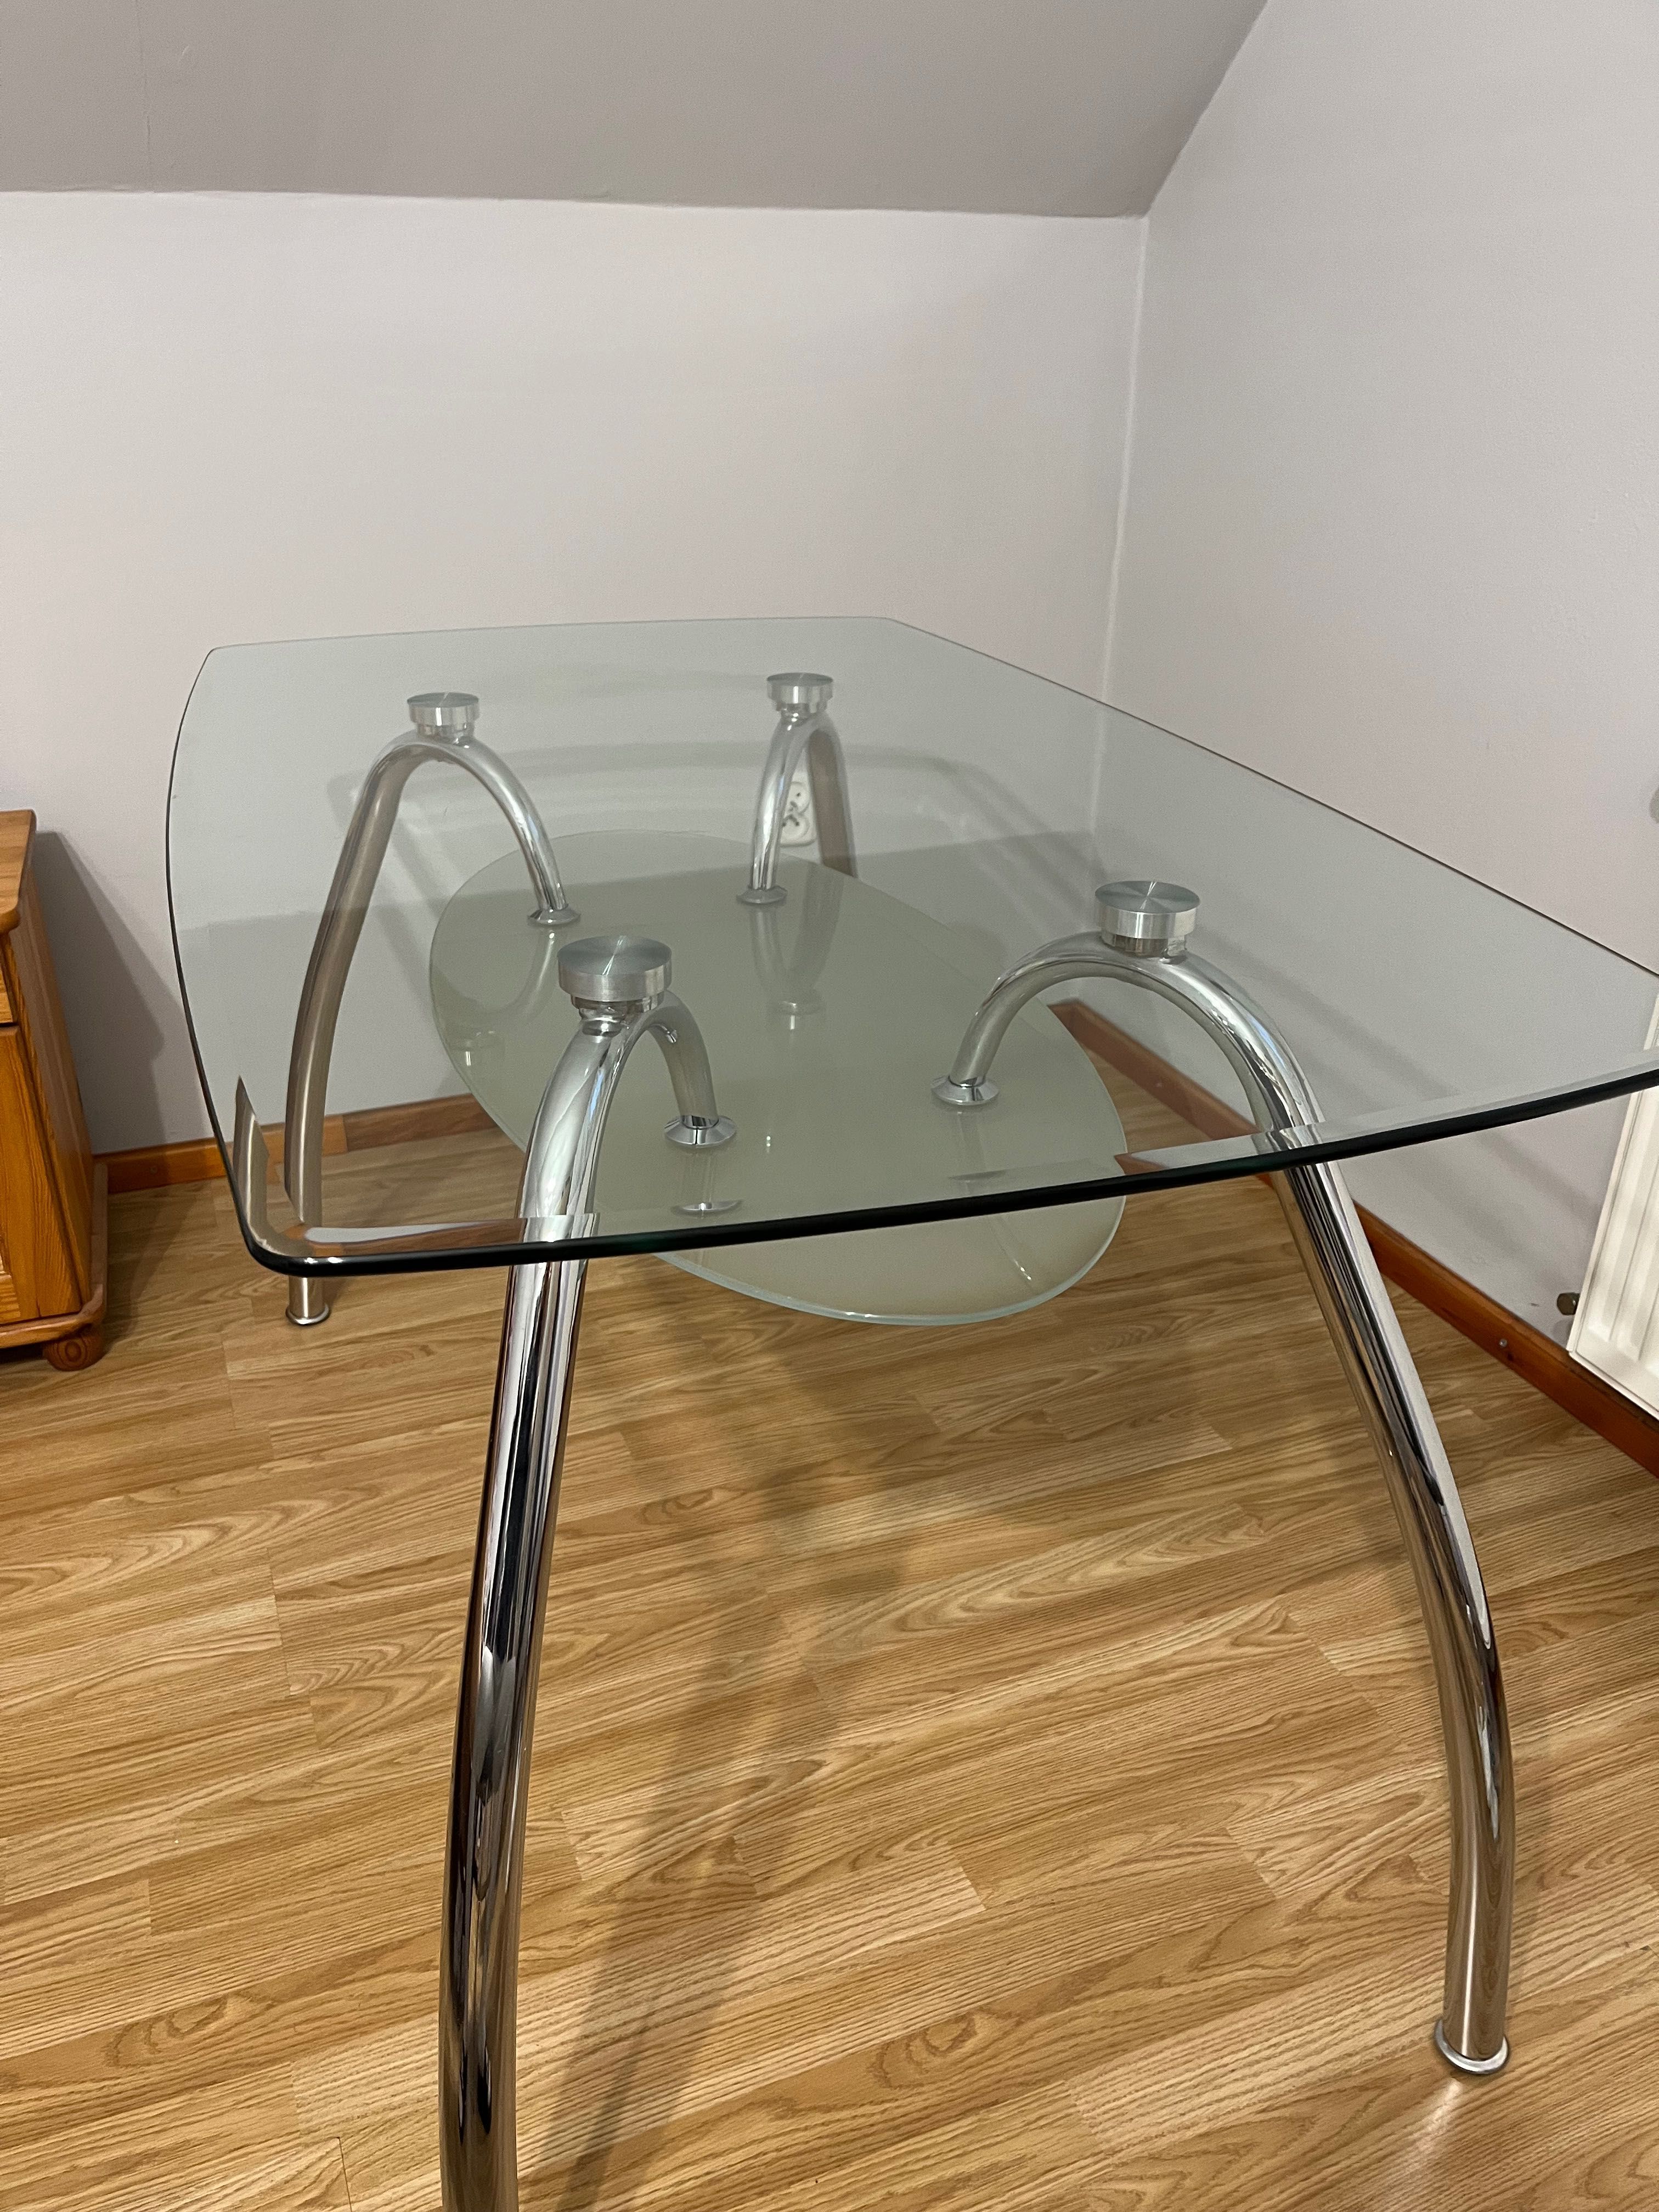 Duży szklany stół